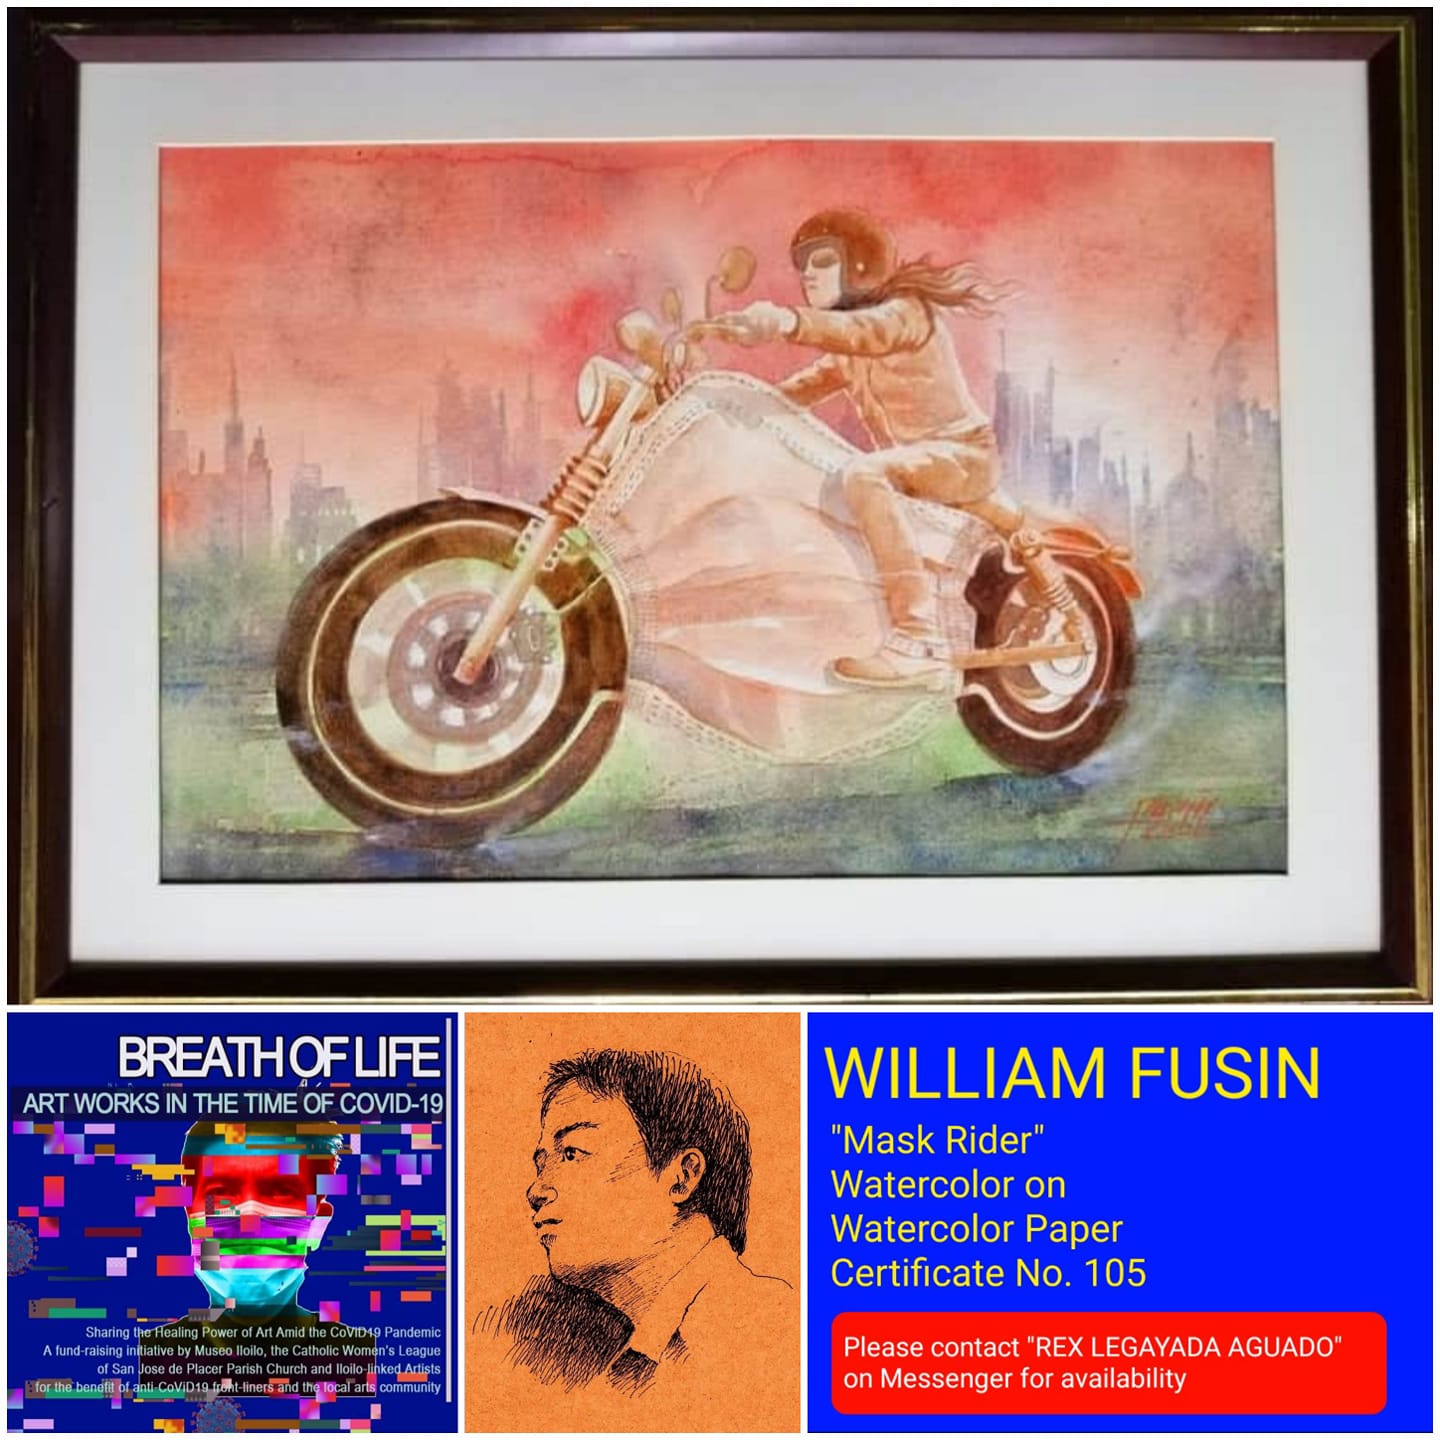 William Fusin